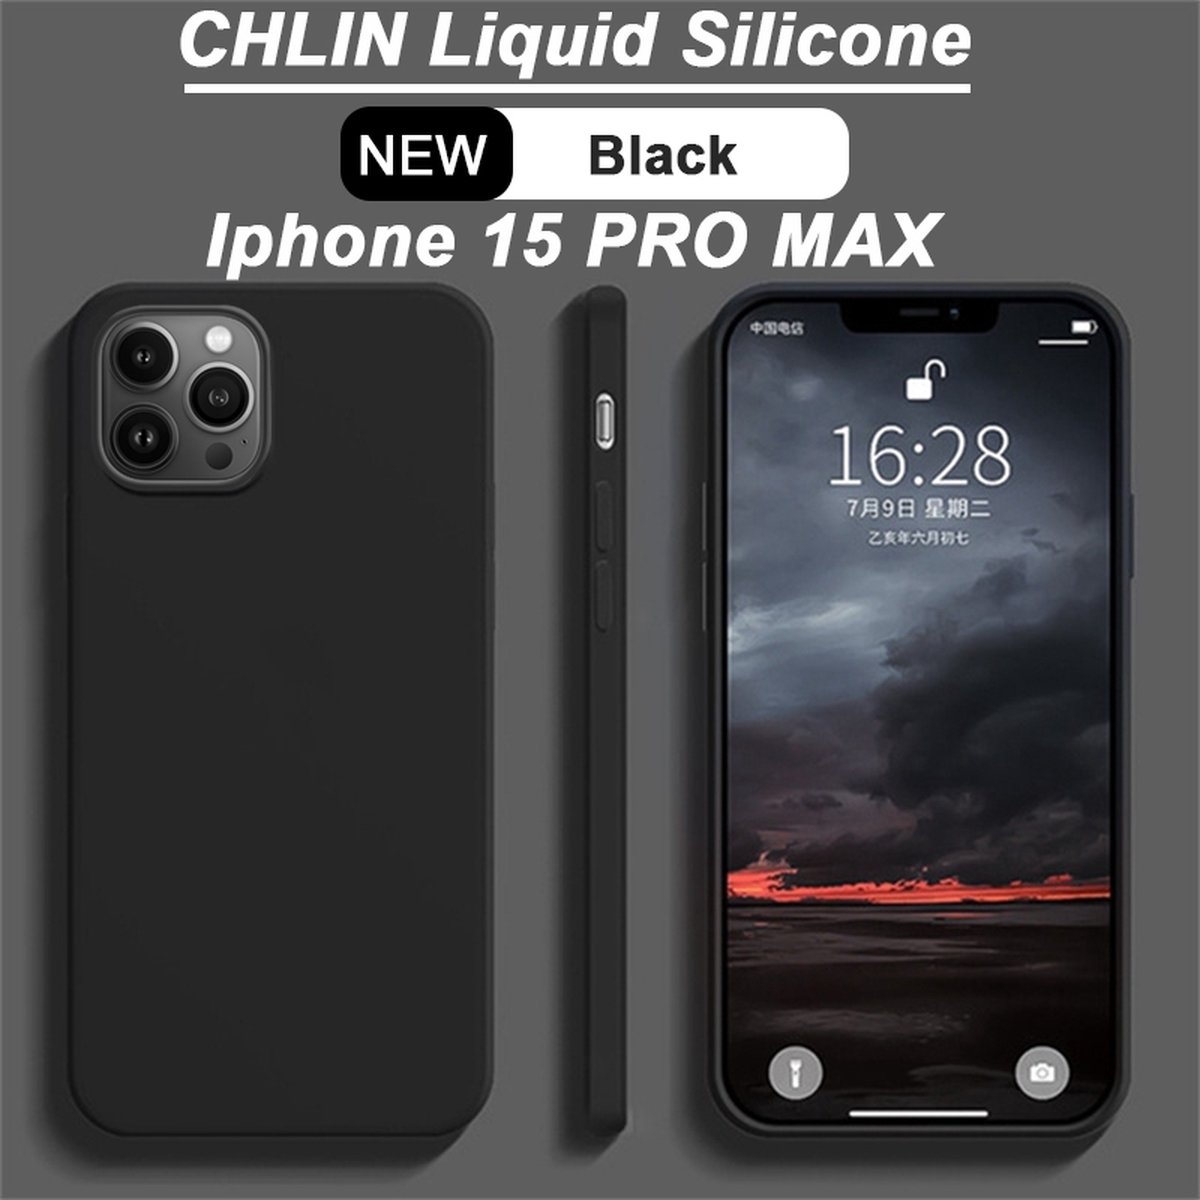 CL CHLIN® Premium Siliconen Case Iphone 15 PRO MAX Zwart - Iphone 15 PRO MAX hoesje - Iphone 15 PRO MAX case - Iphone 15 PRO MAX hoes - Silicone hoesje - Iphone 15 PRO MAX protection - Iphone 15 PRO MAX protector